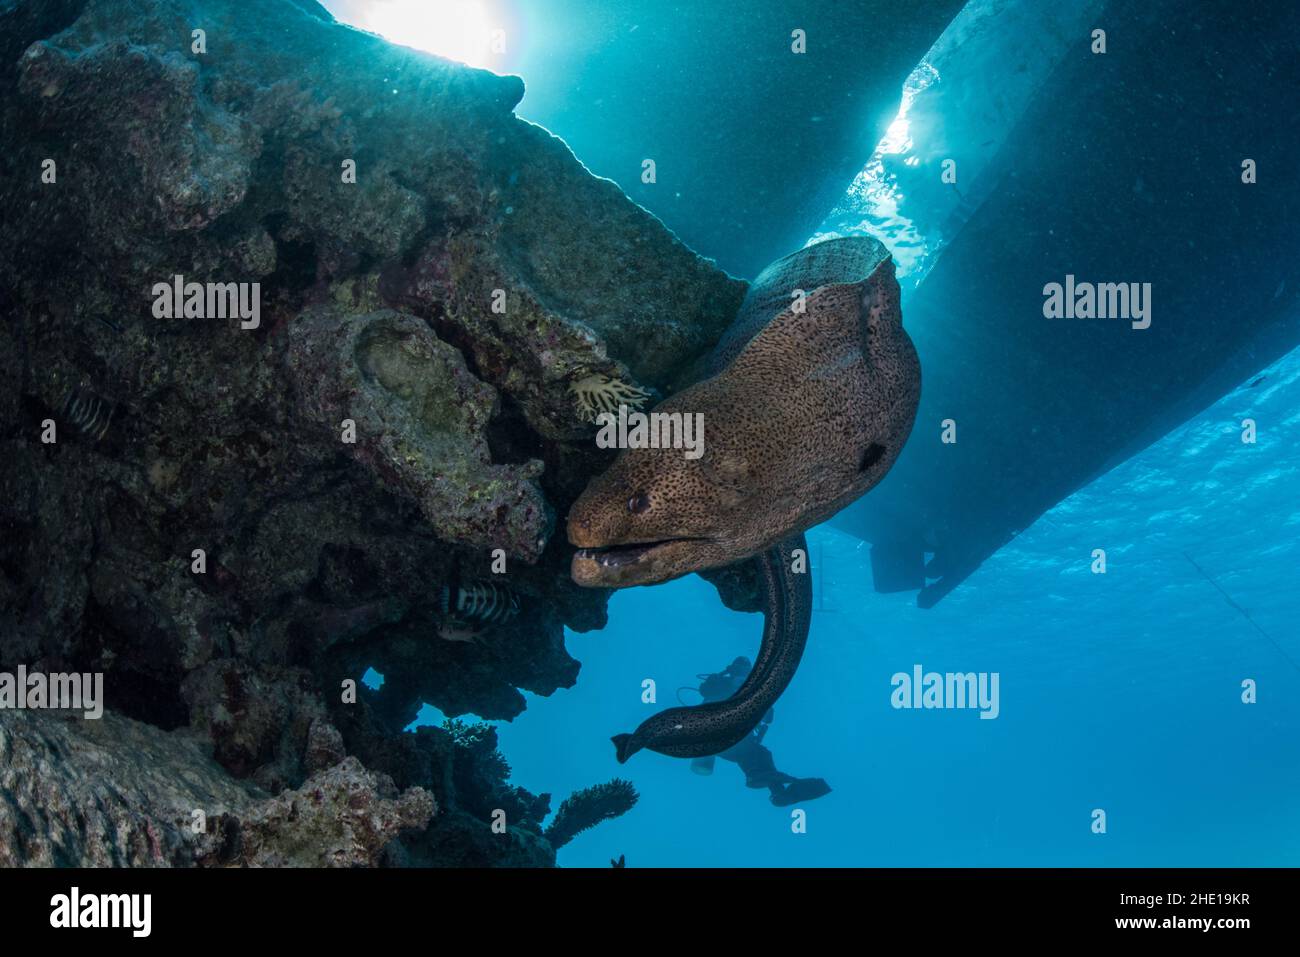 Ein riesiger Muränen-Aal (Gymnothorax javanicus) aus dem Roten Meer in der Nähe von Hurghada, Ägypten. Stockfoto